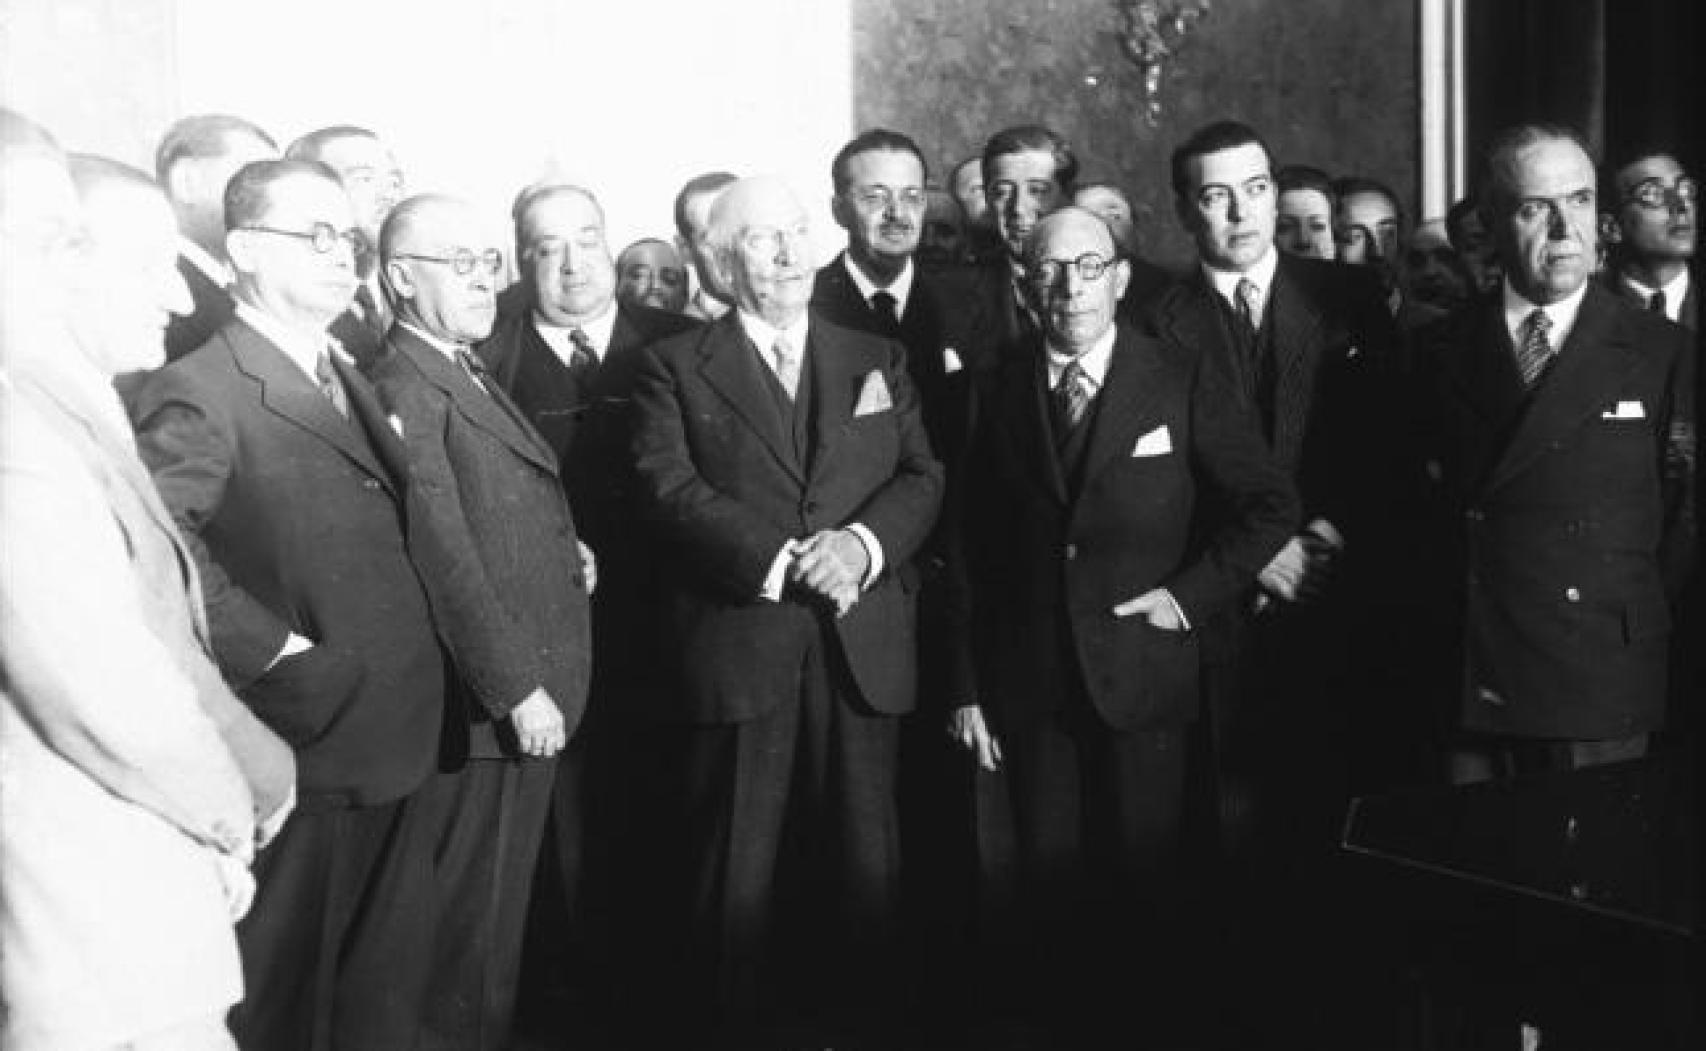 Samper, en el centro con gafas, durante la toma de posesión de la presidencia del Consejo de Ministros.